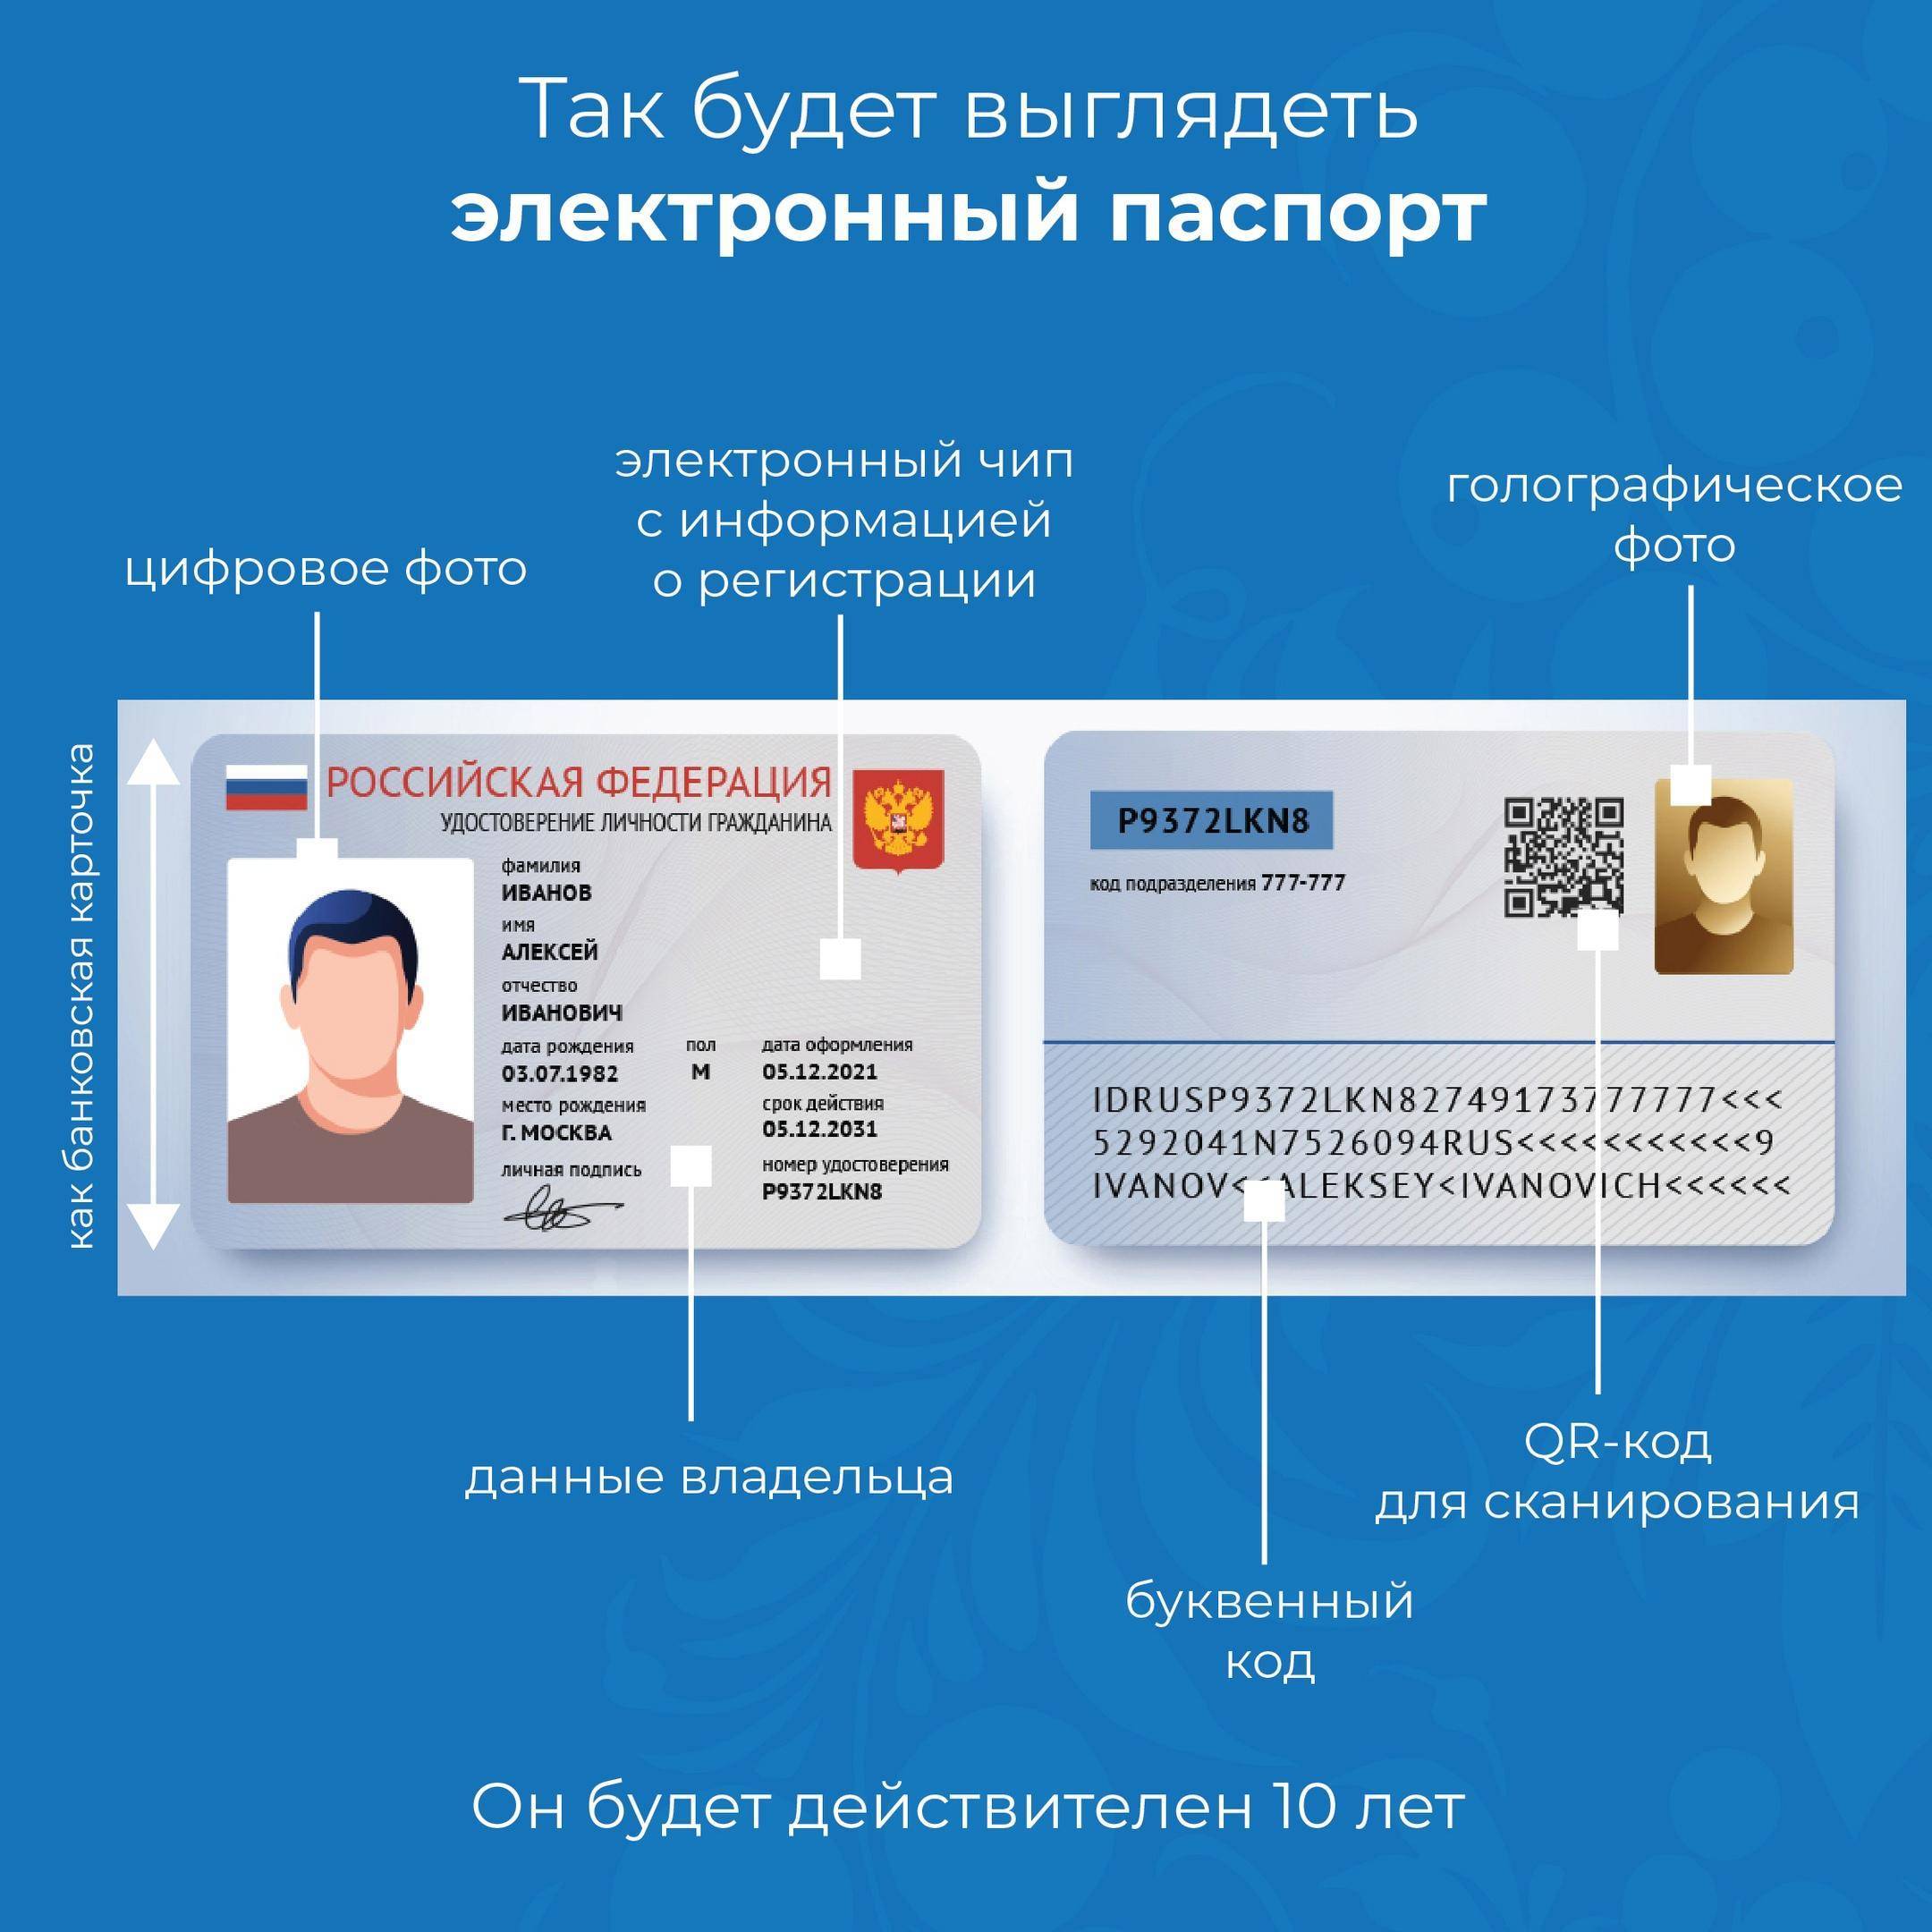 В россии вводят электронные паспорта. как это будет работать и сколько будет стоить? — регионы россии